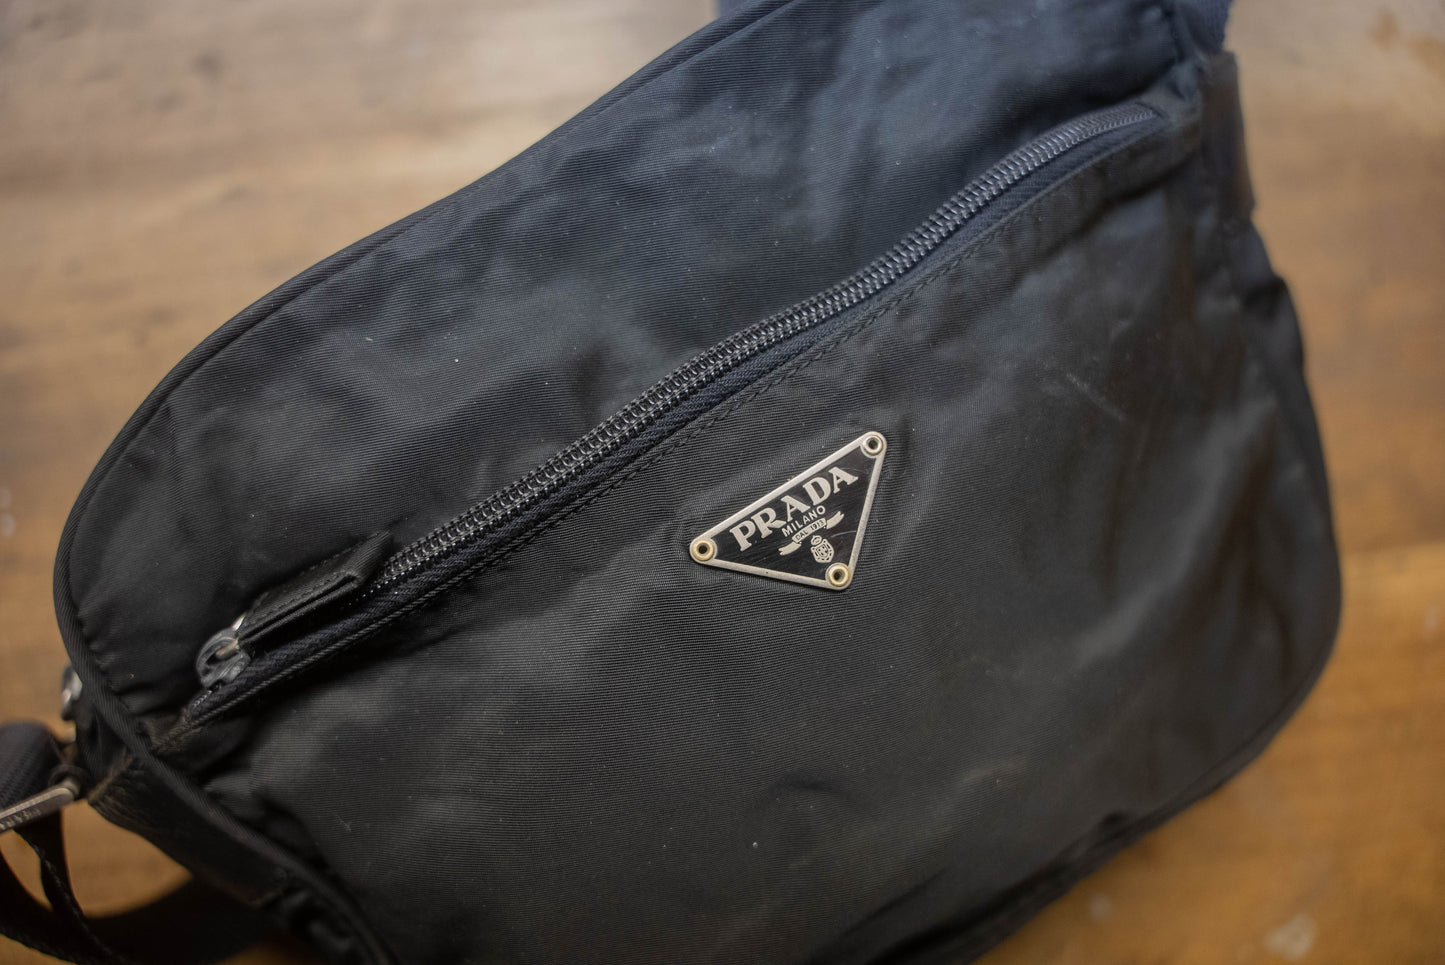 Prada BT0167 Vela Sport Nylon Shoulder / Messenger Bag Black